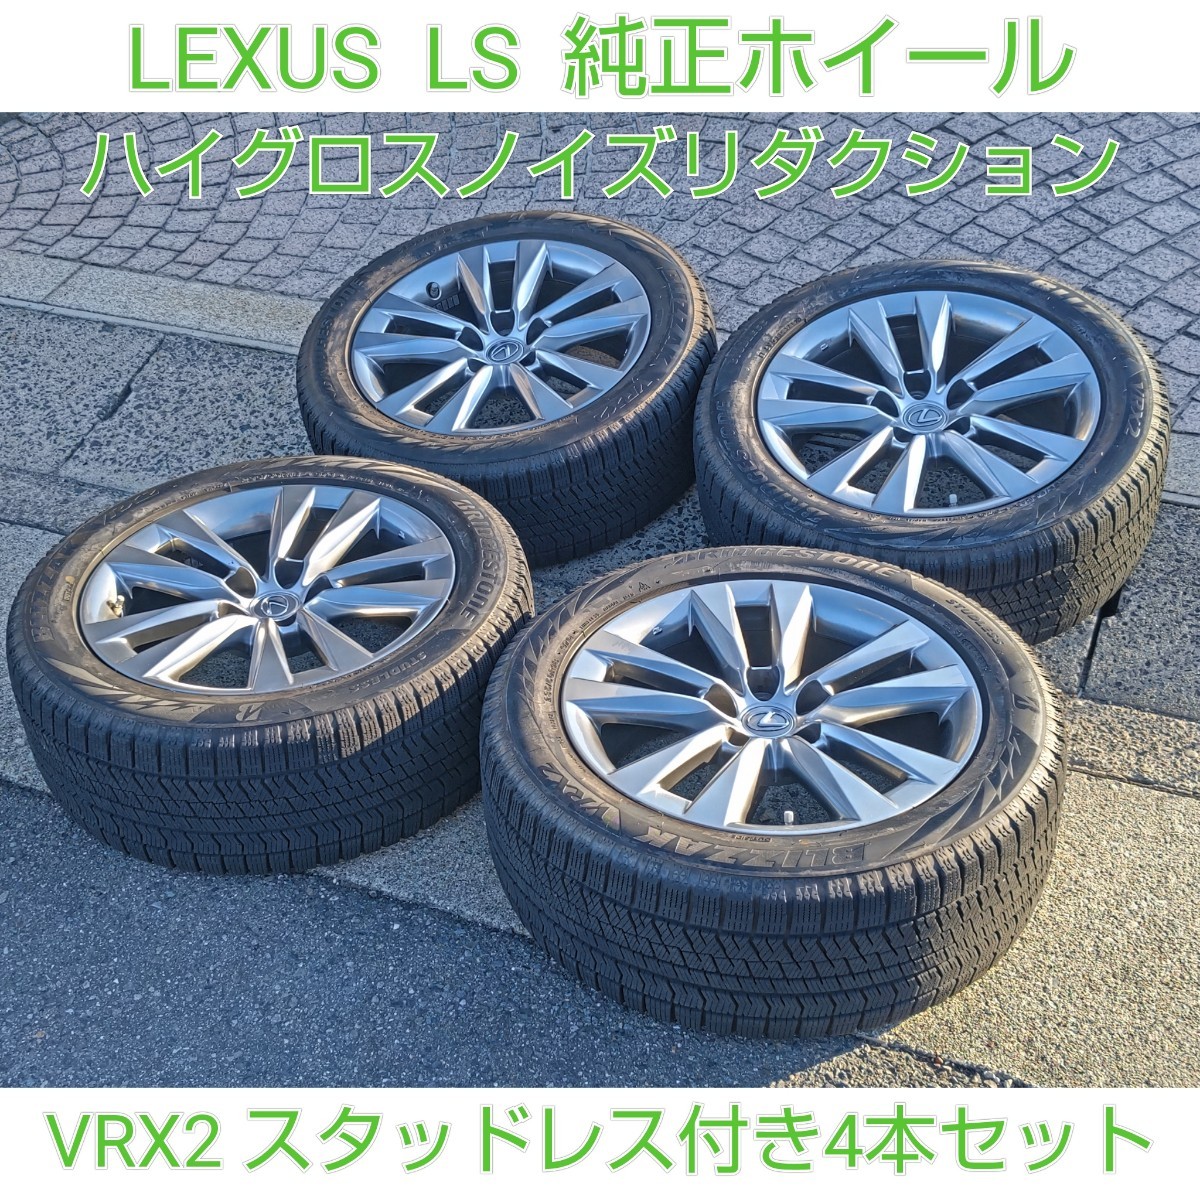 LEXUS レクサス LS 後期 純正ホイール ノイズリダクション スタッドレスタイヤ VRX2 4本セット ブリザック タイヤホイール 235/50R18_画像1